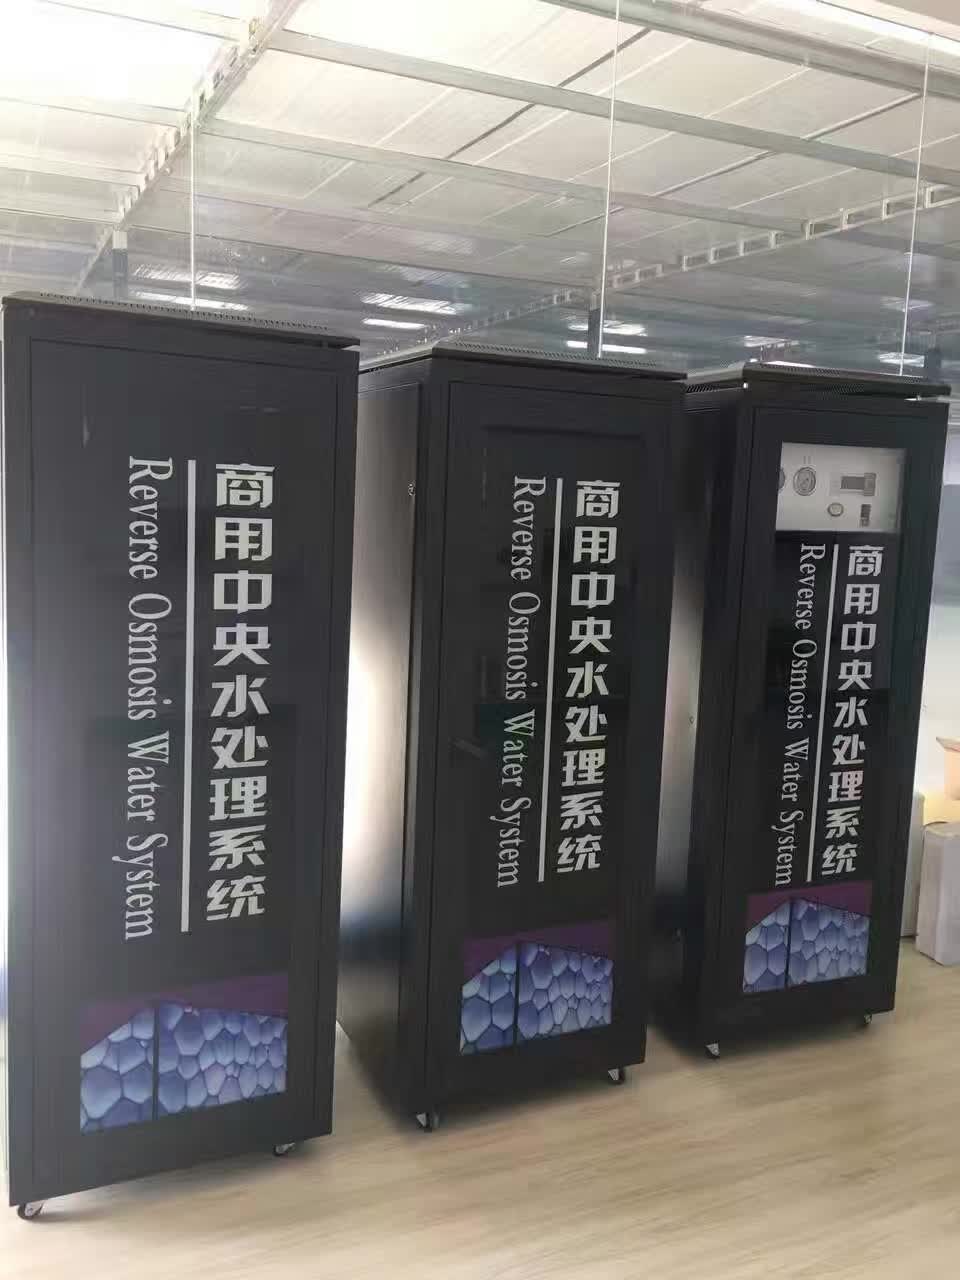 唐山市商用直饮水机-2系列厂家